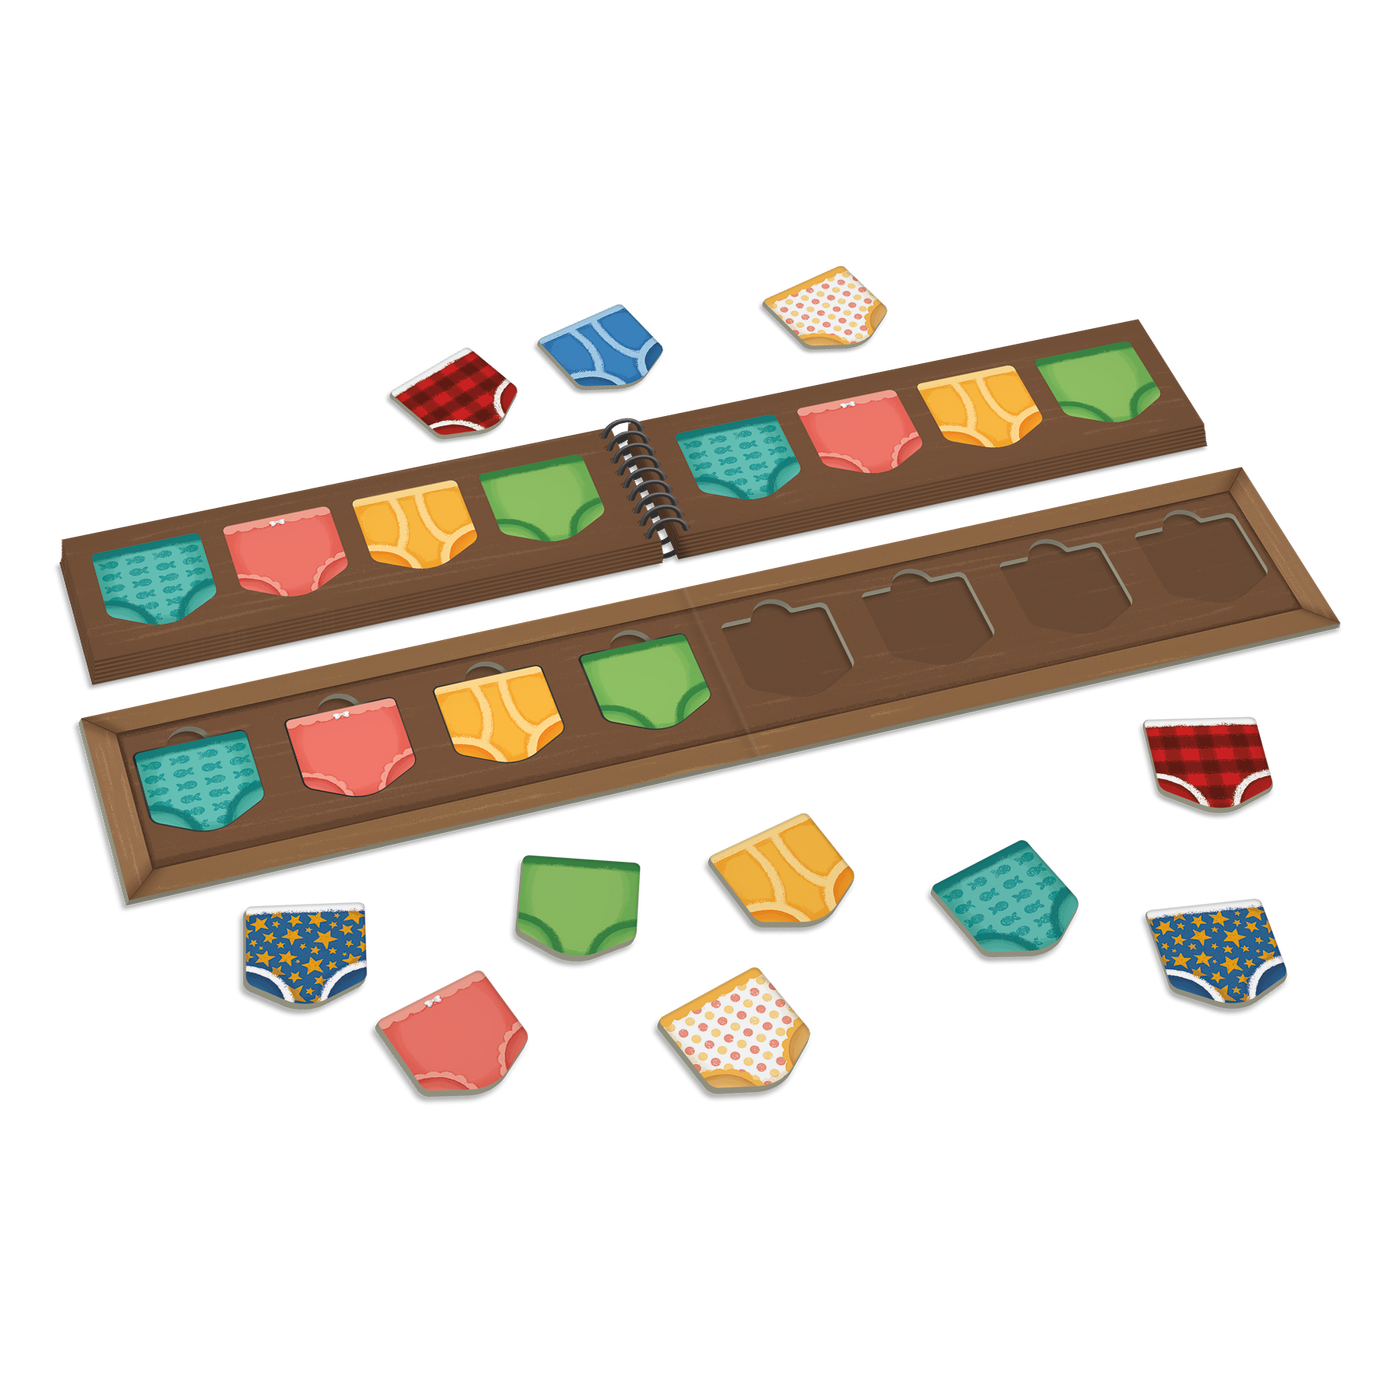 Le tiroir à bobettes - Composantes du jeu : gabarit-tiroir, guide de rangement boudiné et morceaux de bobettes